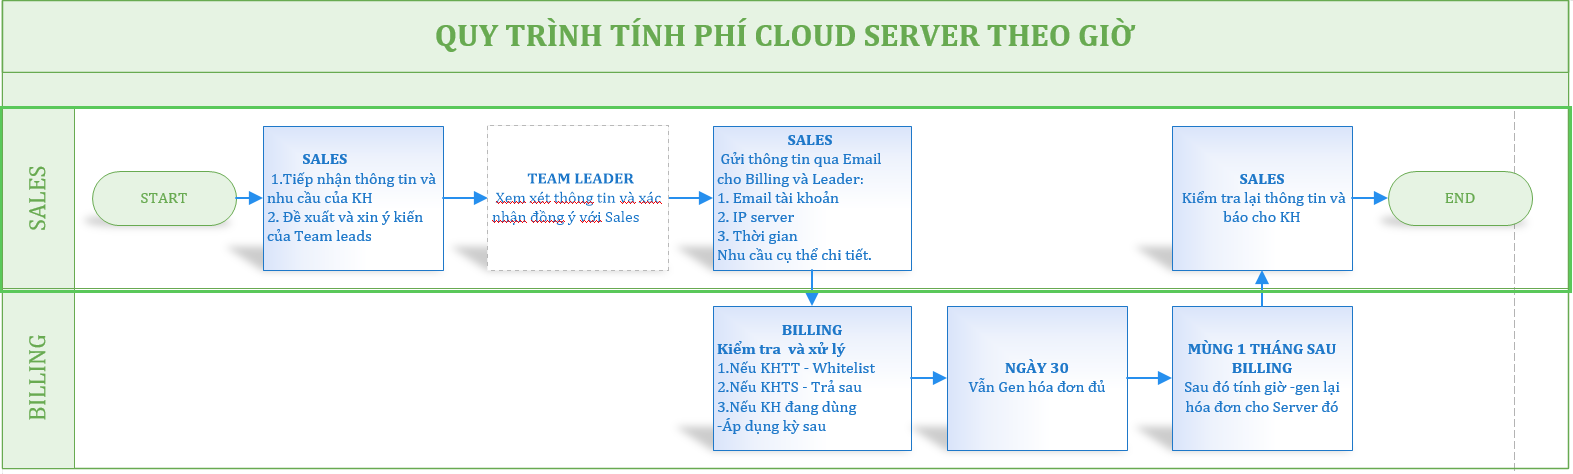 Quy Trình tính Phí Cloud Server theo giờ.png